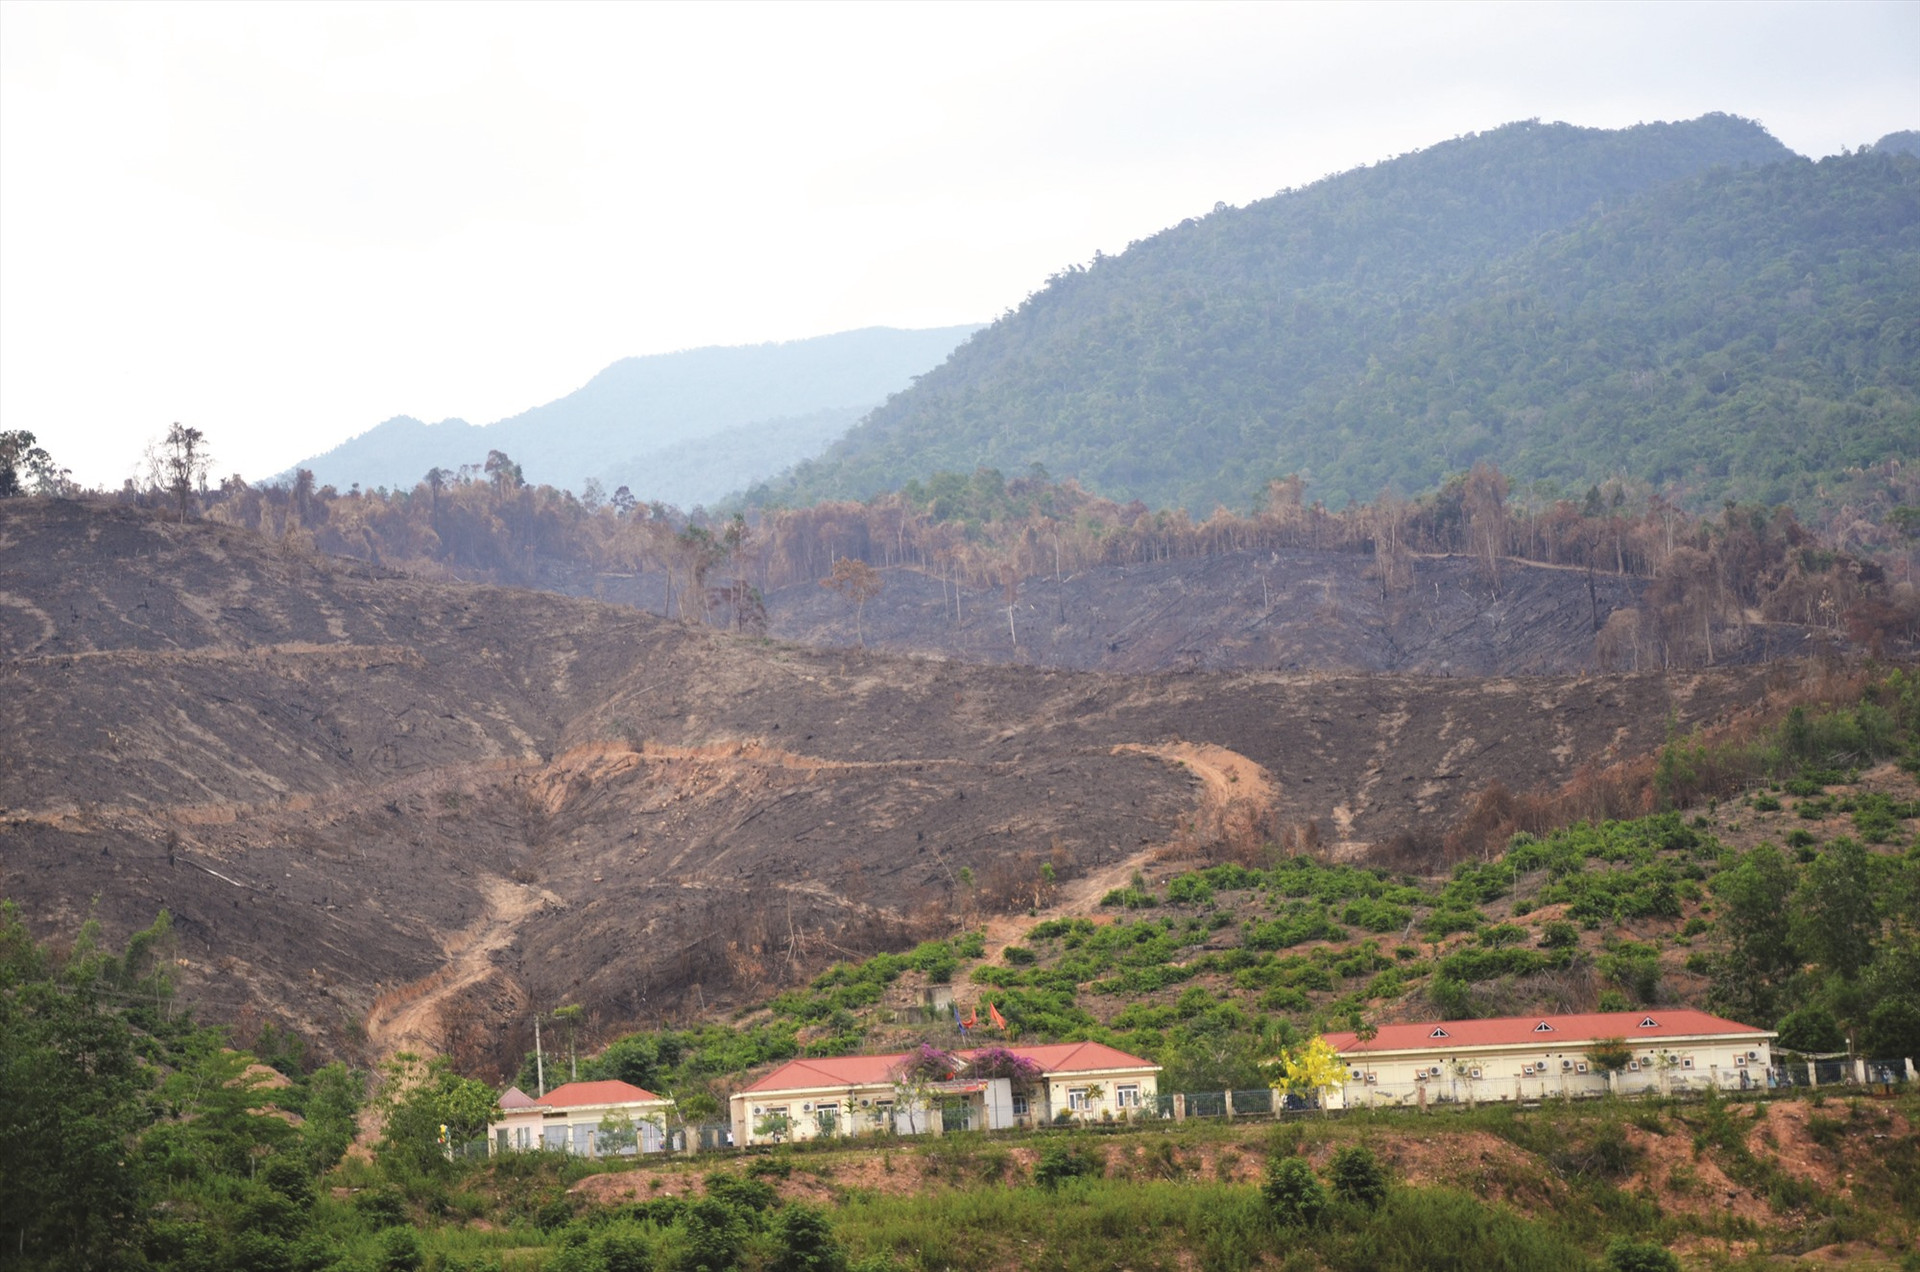 Khu vực cháy rừng nằm gần công trình nhà máy thủy điện Sông Bung 5. Ảnh: H.P